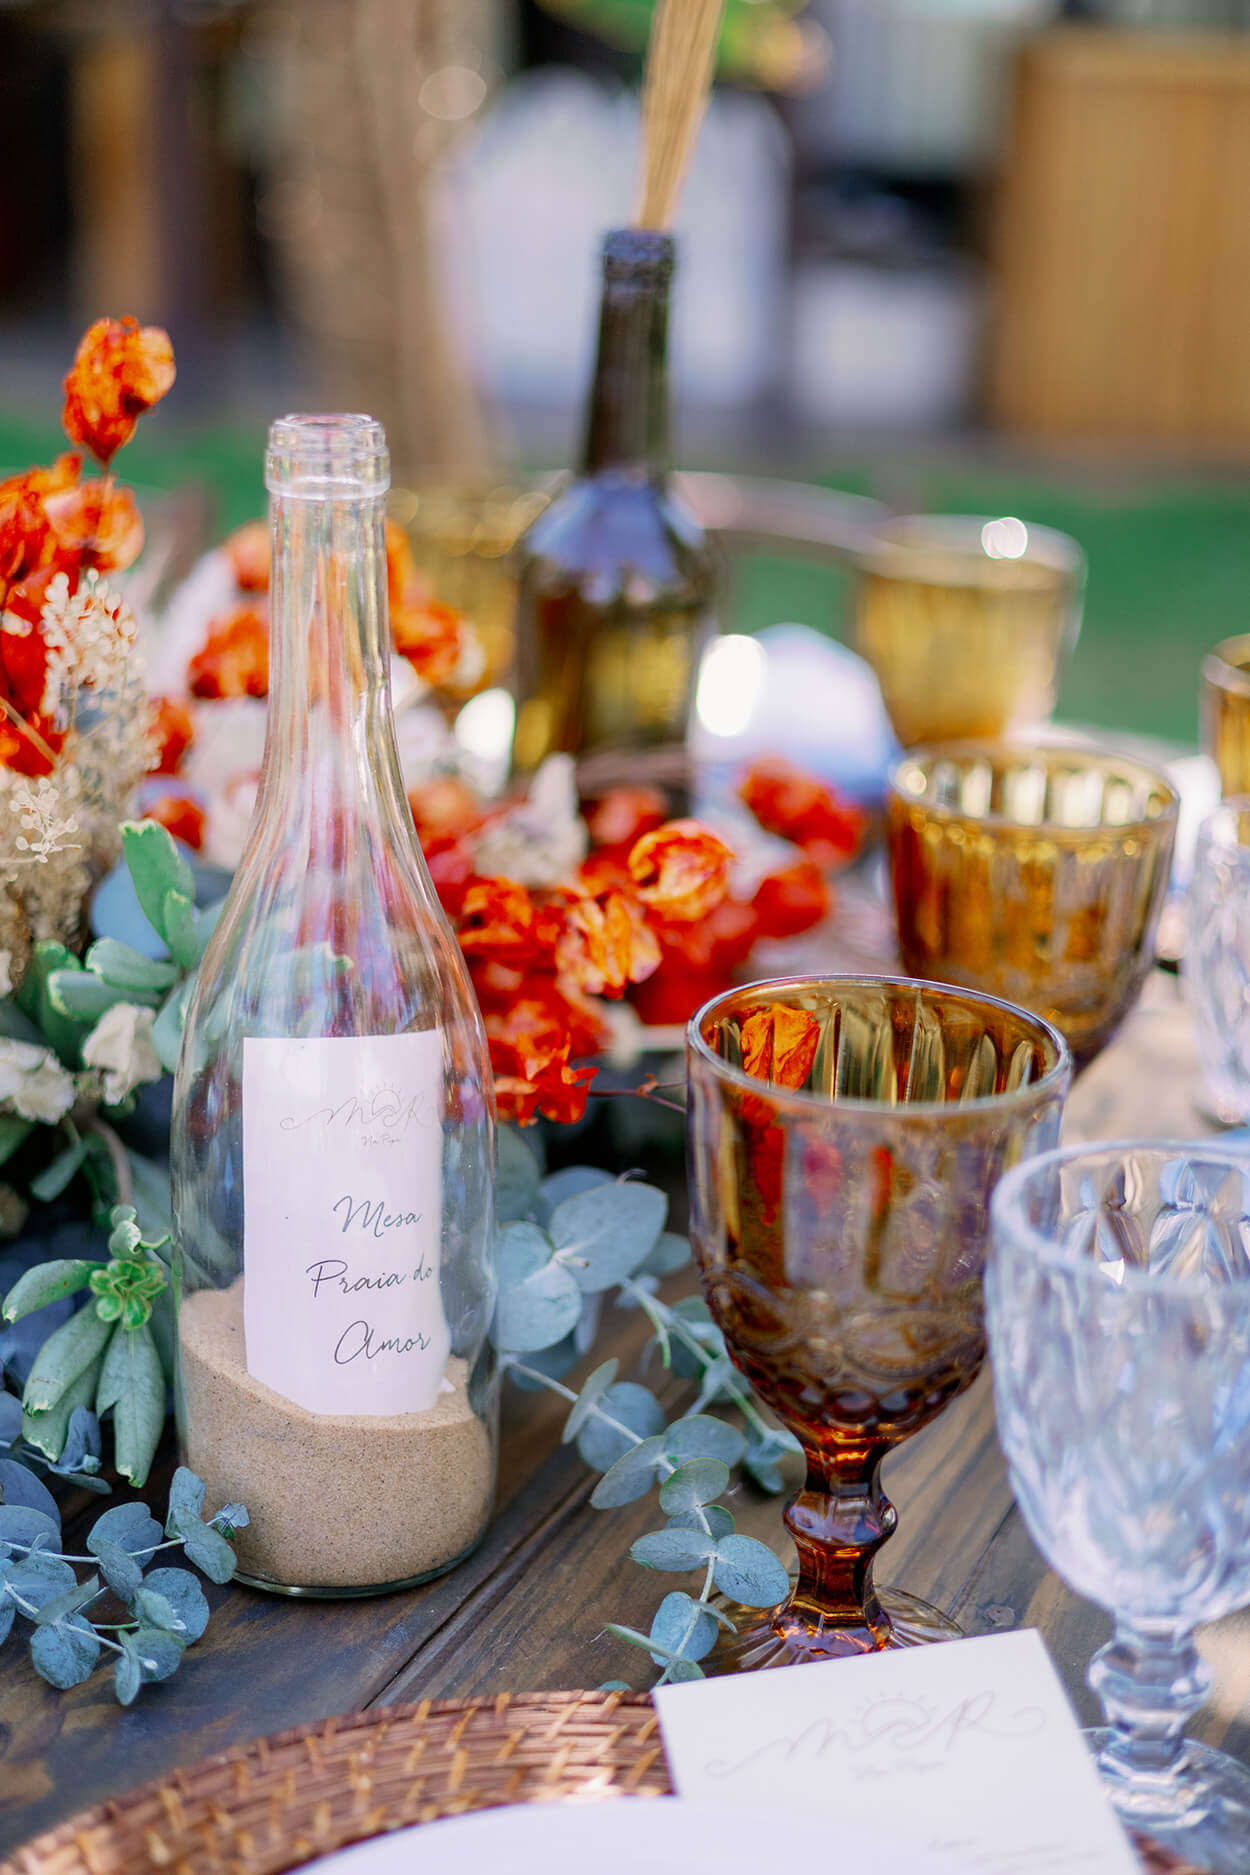 Centro de mesa com folhas de eucalipto e flores laranja e garrafa com areia dentro